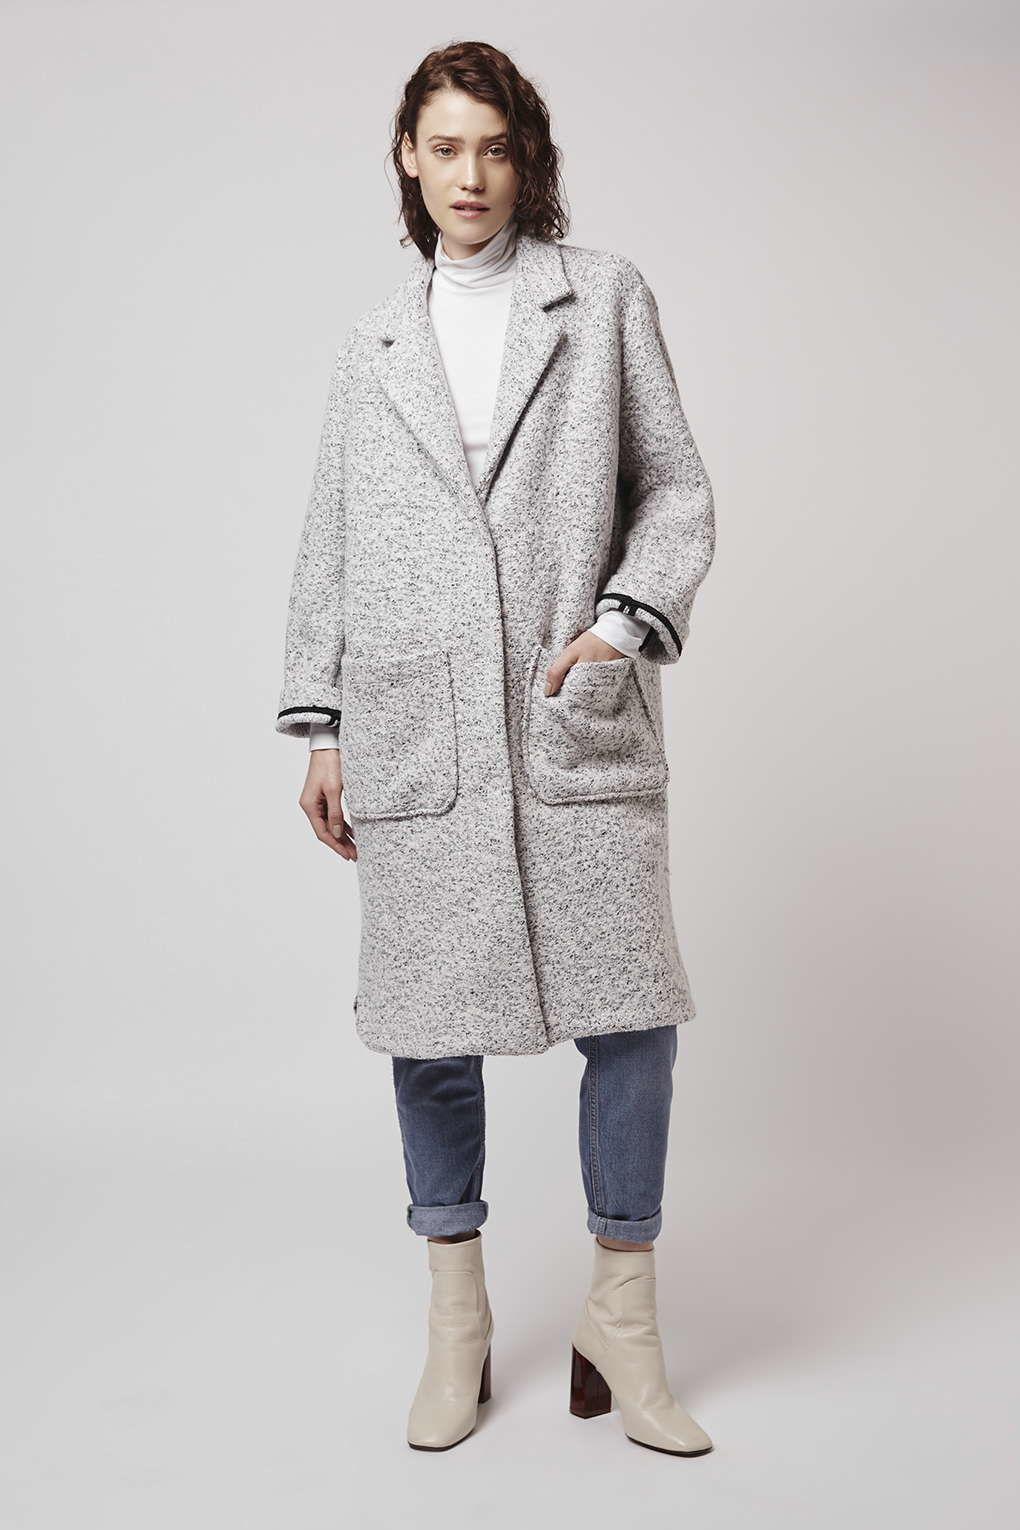 Lyst - Topshop Longline Wool Duster Coat in Gray